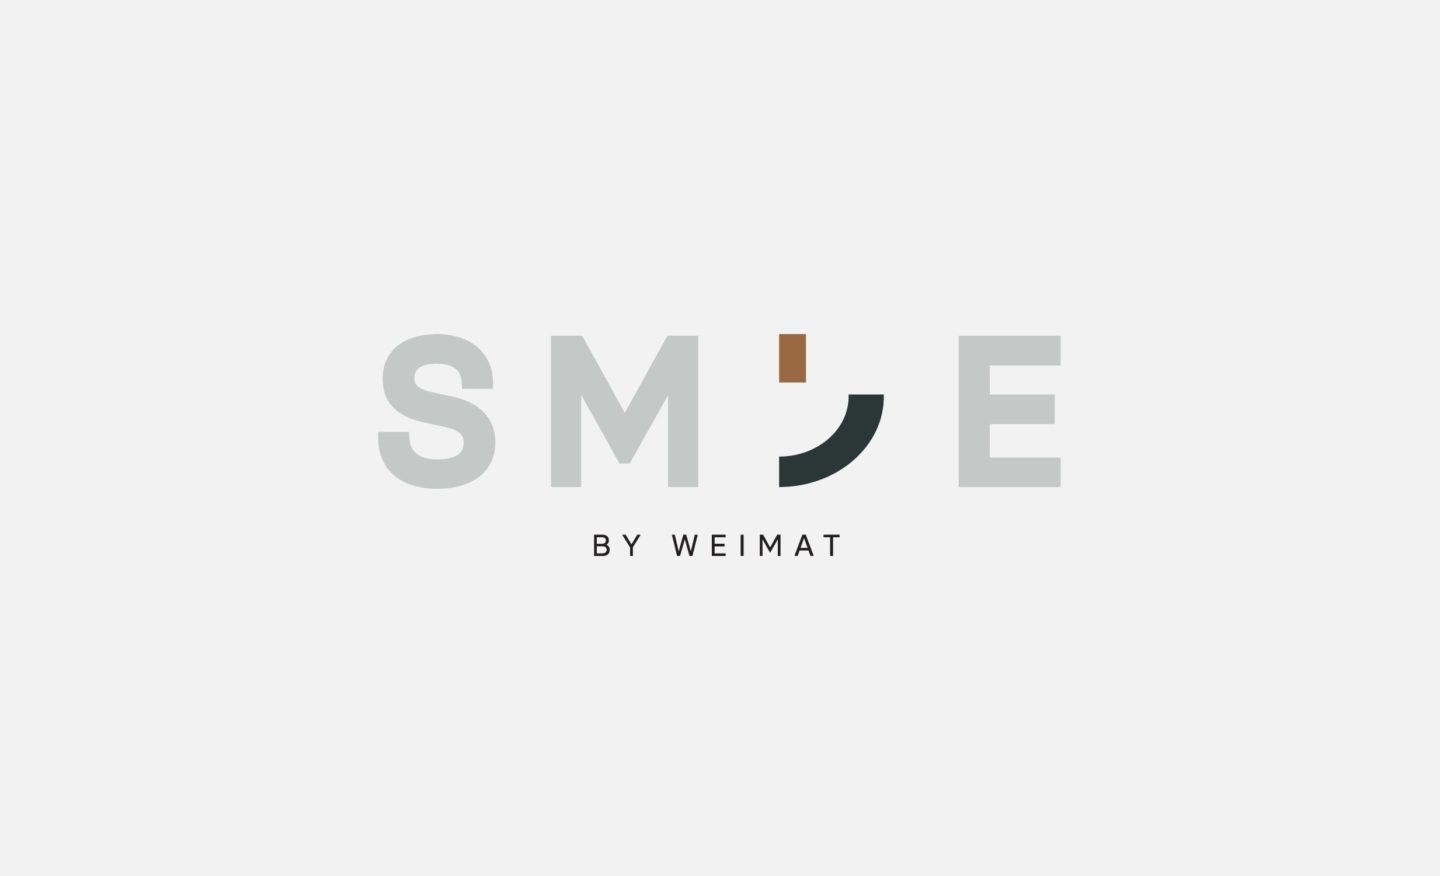 SMILE Logo